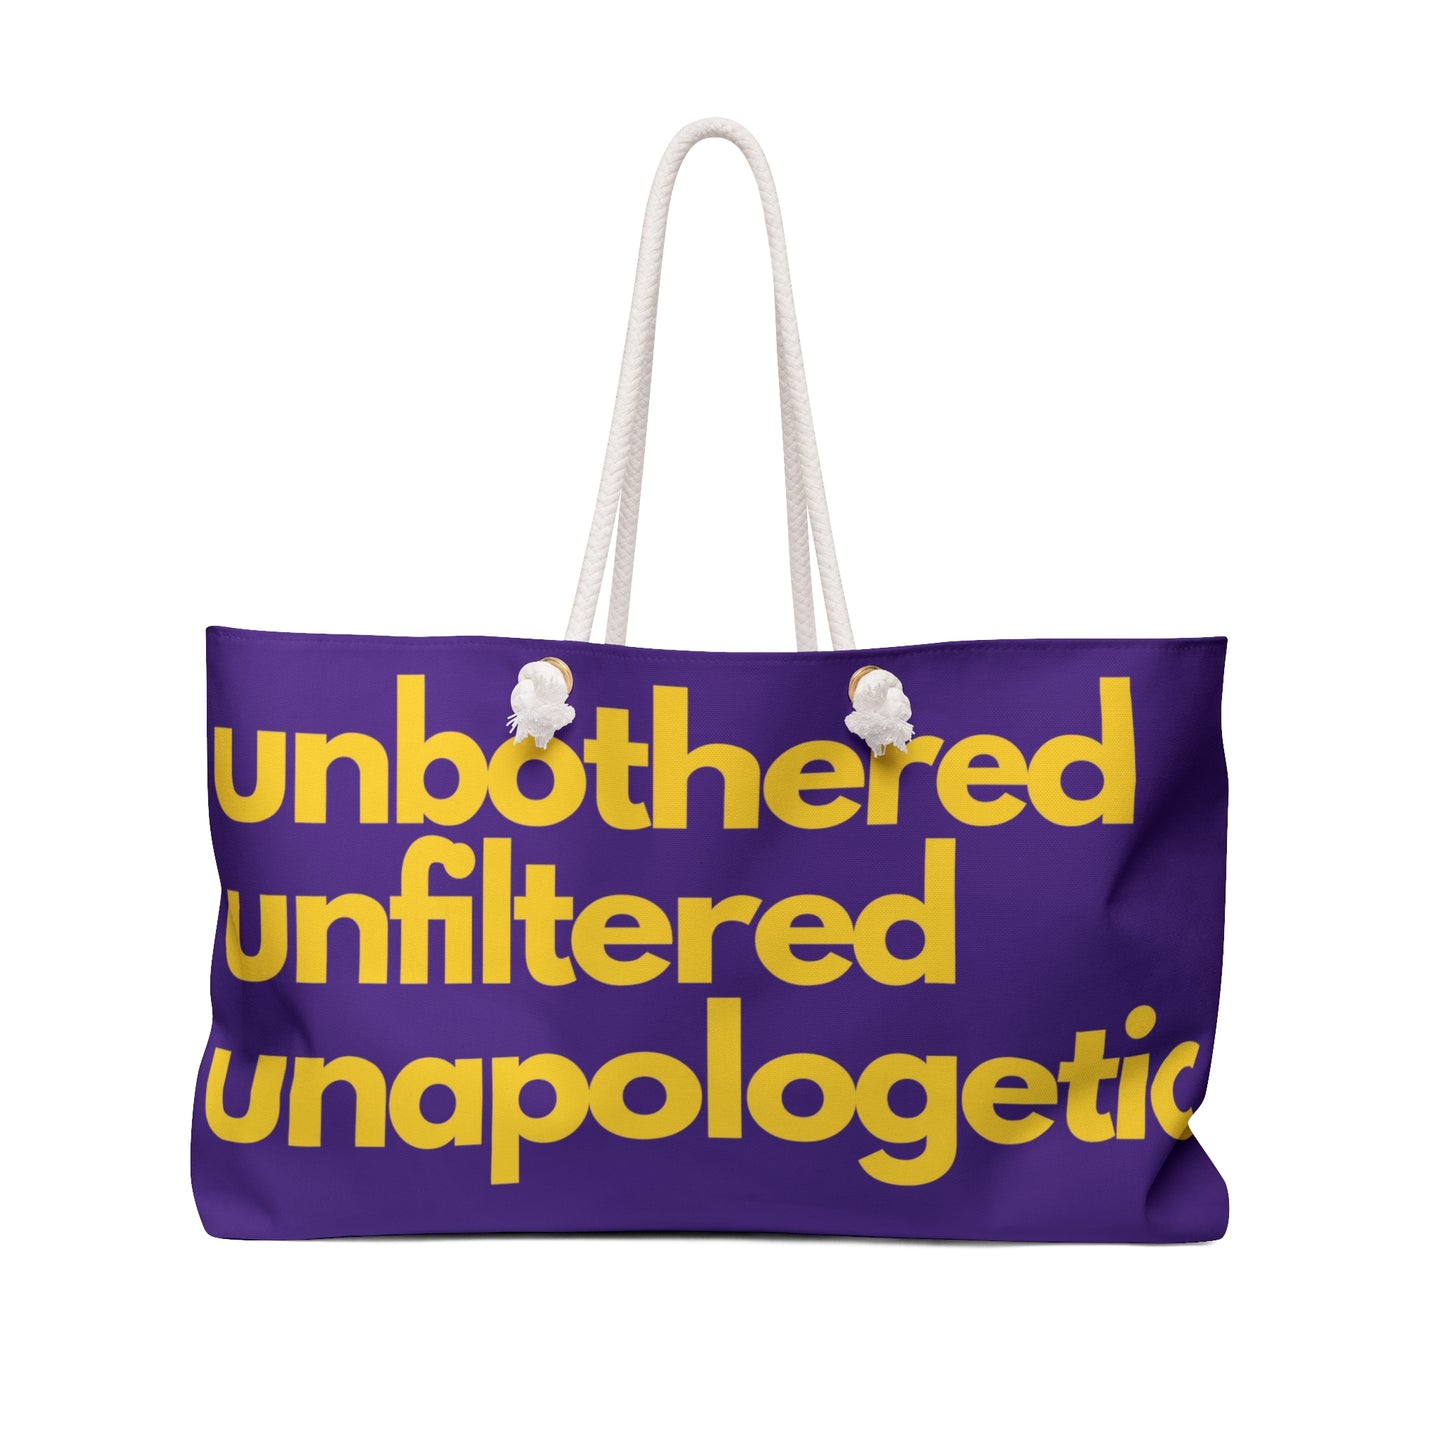 Unbothered Weekender Bag